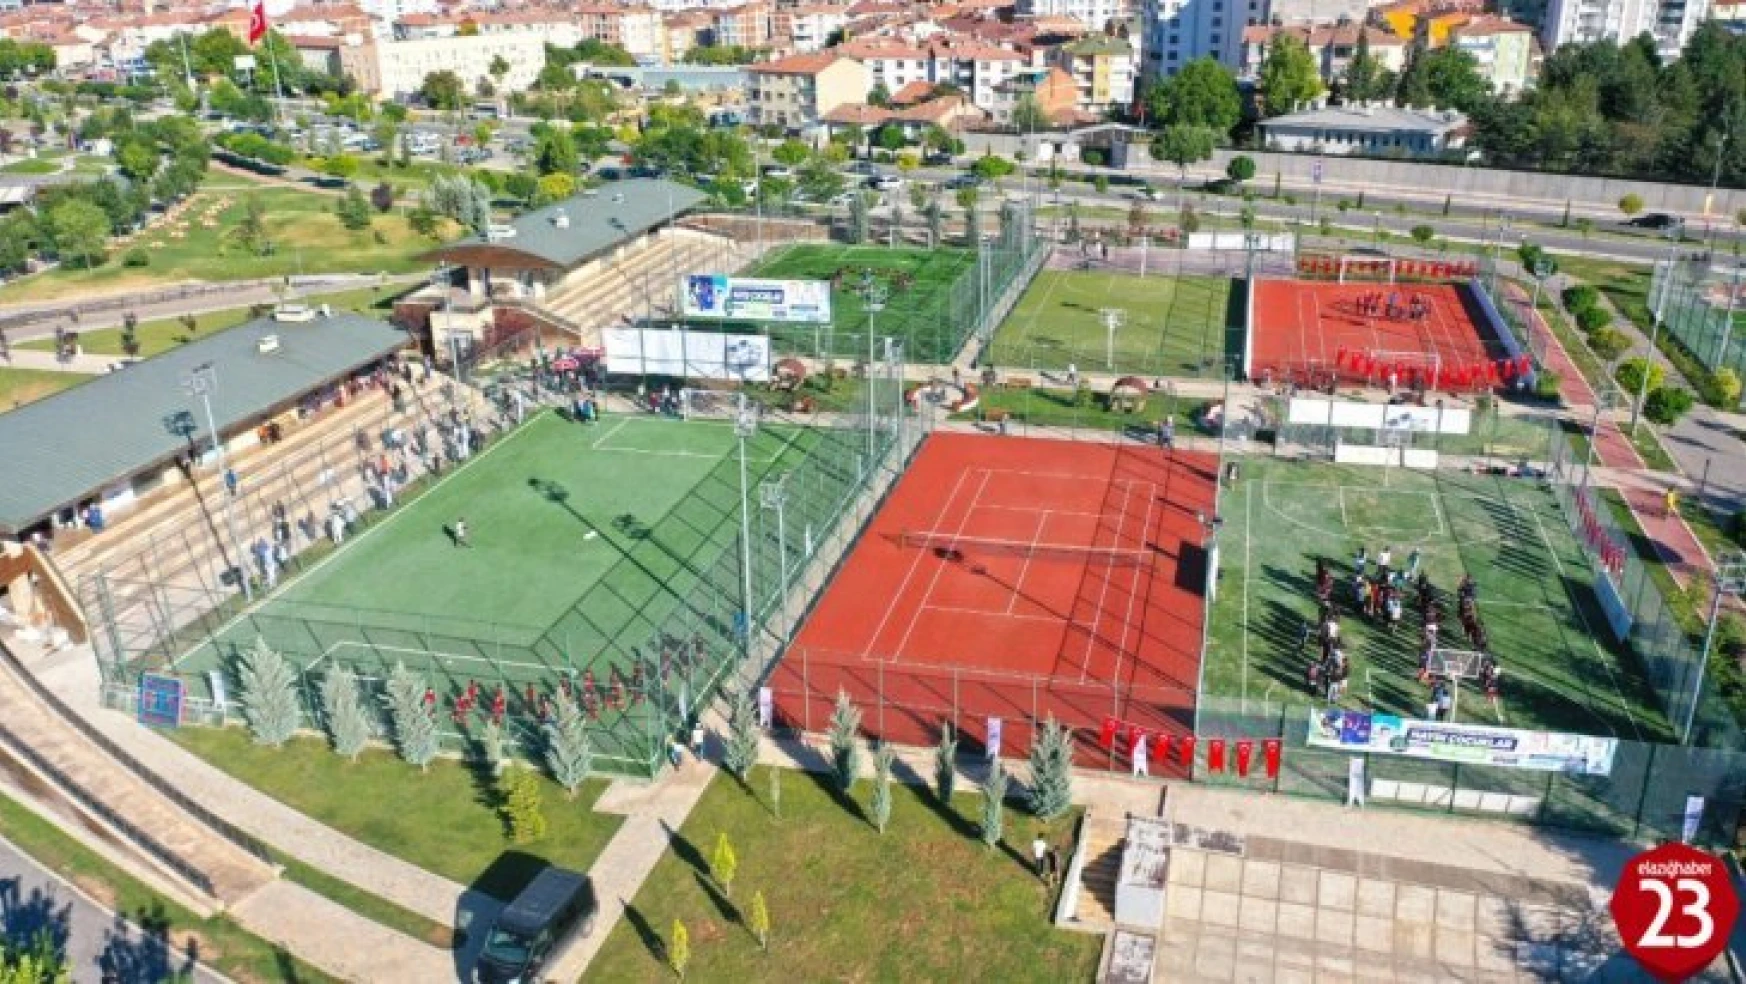 Elazığ Belediyesi Yaz Spor Okulları Açılış Töreni Gerçekleştirildi